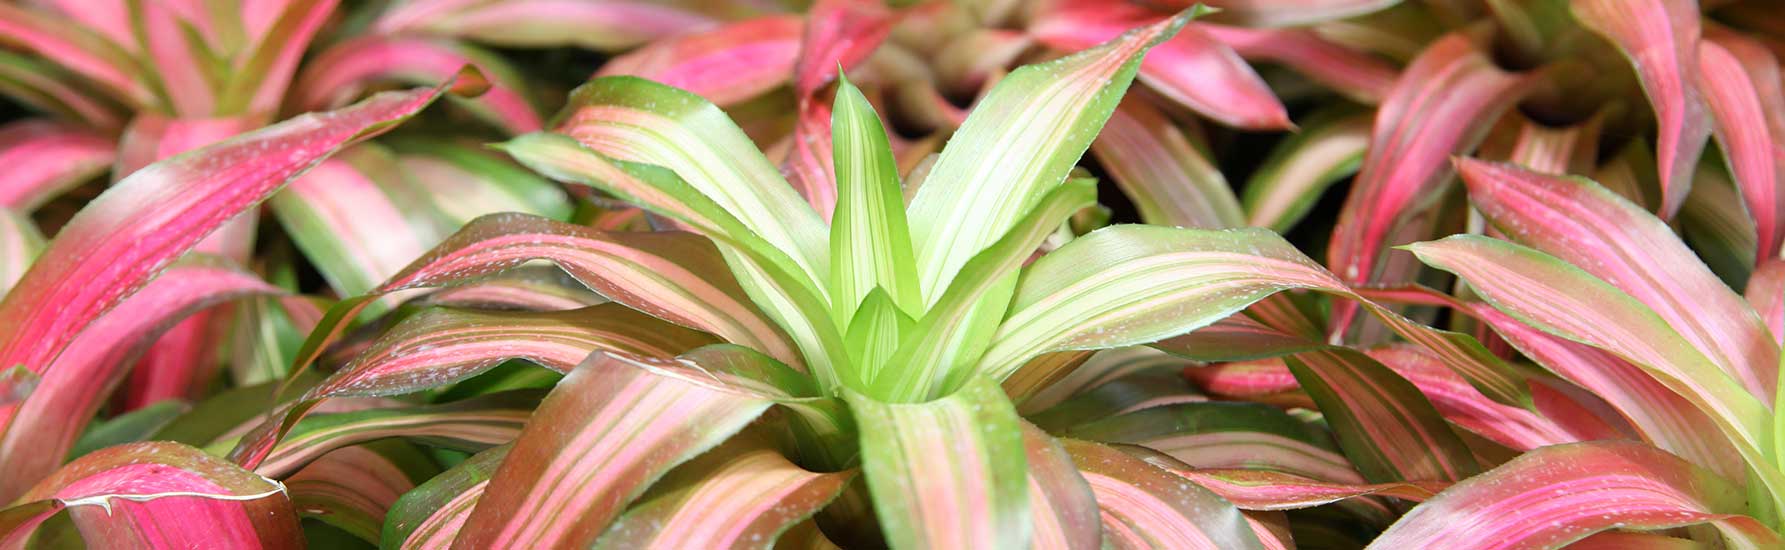 bromeliads.info tells you the best location to grow bromeliads